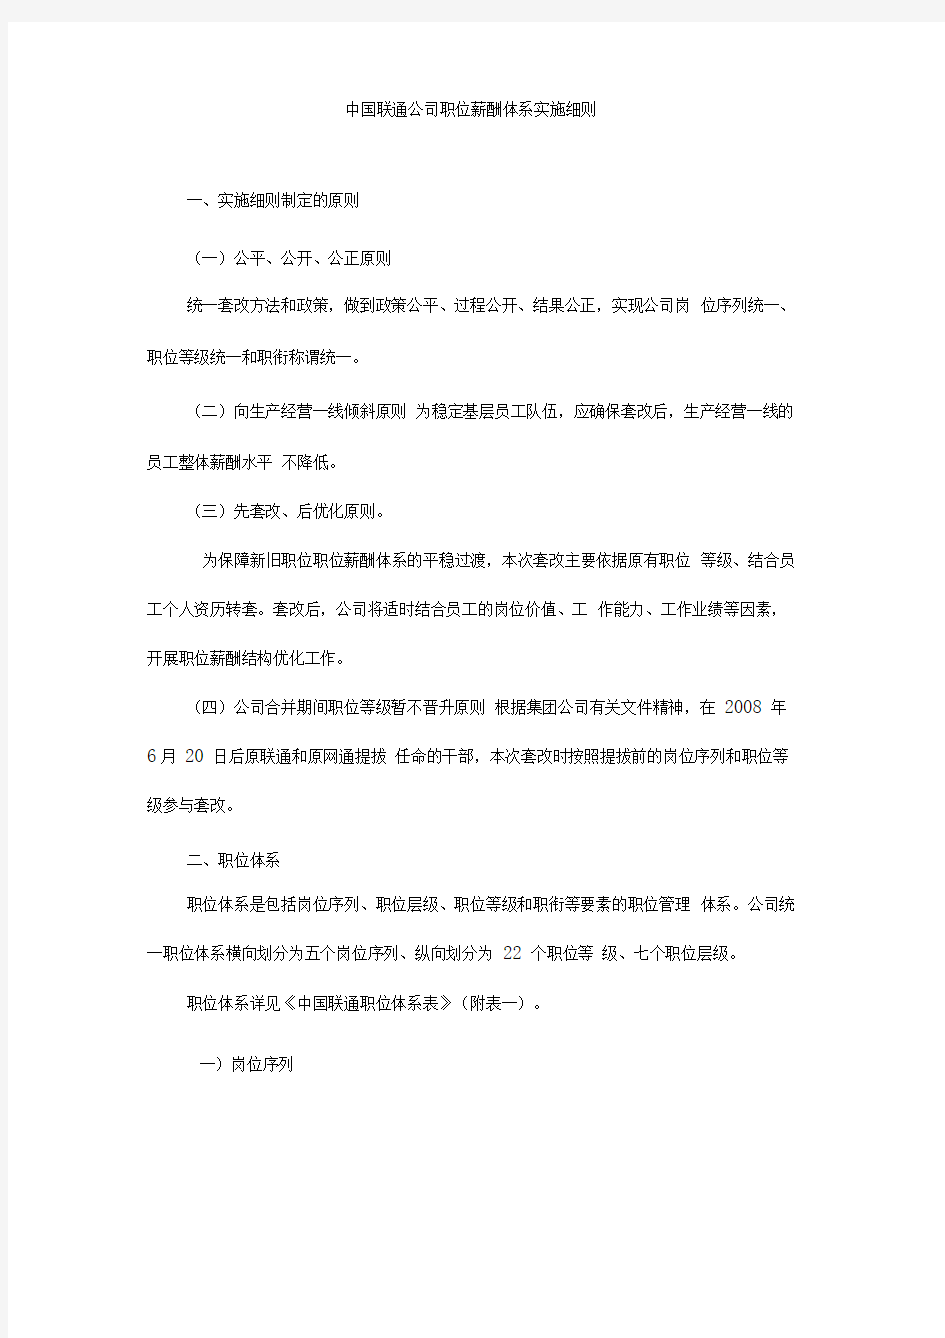 中国联通公司职位薪酬体系实施细则